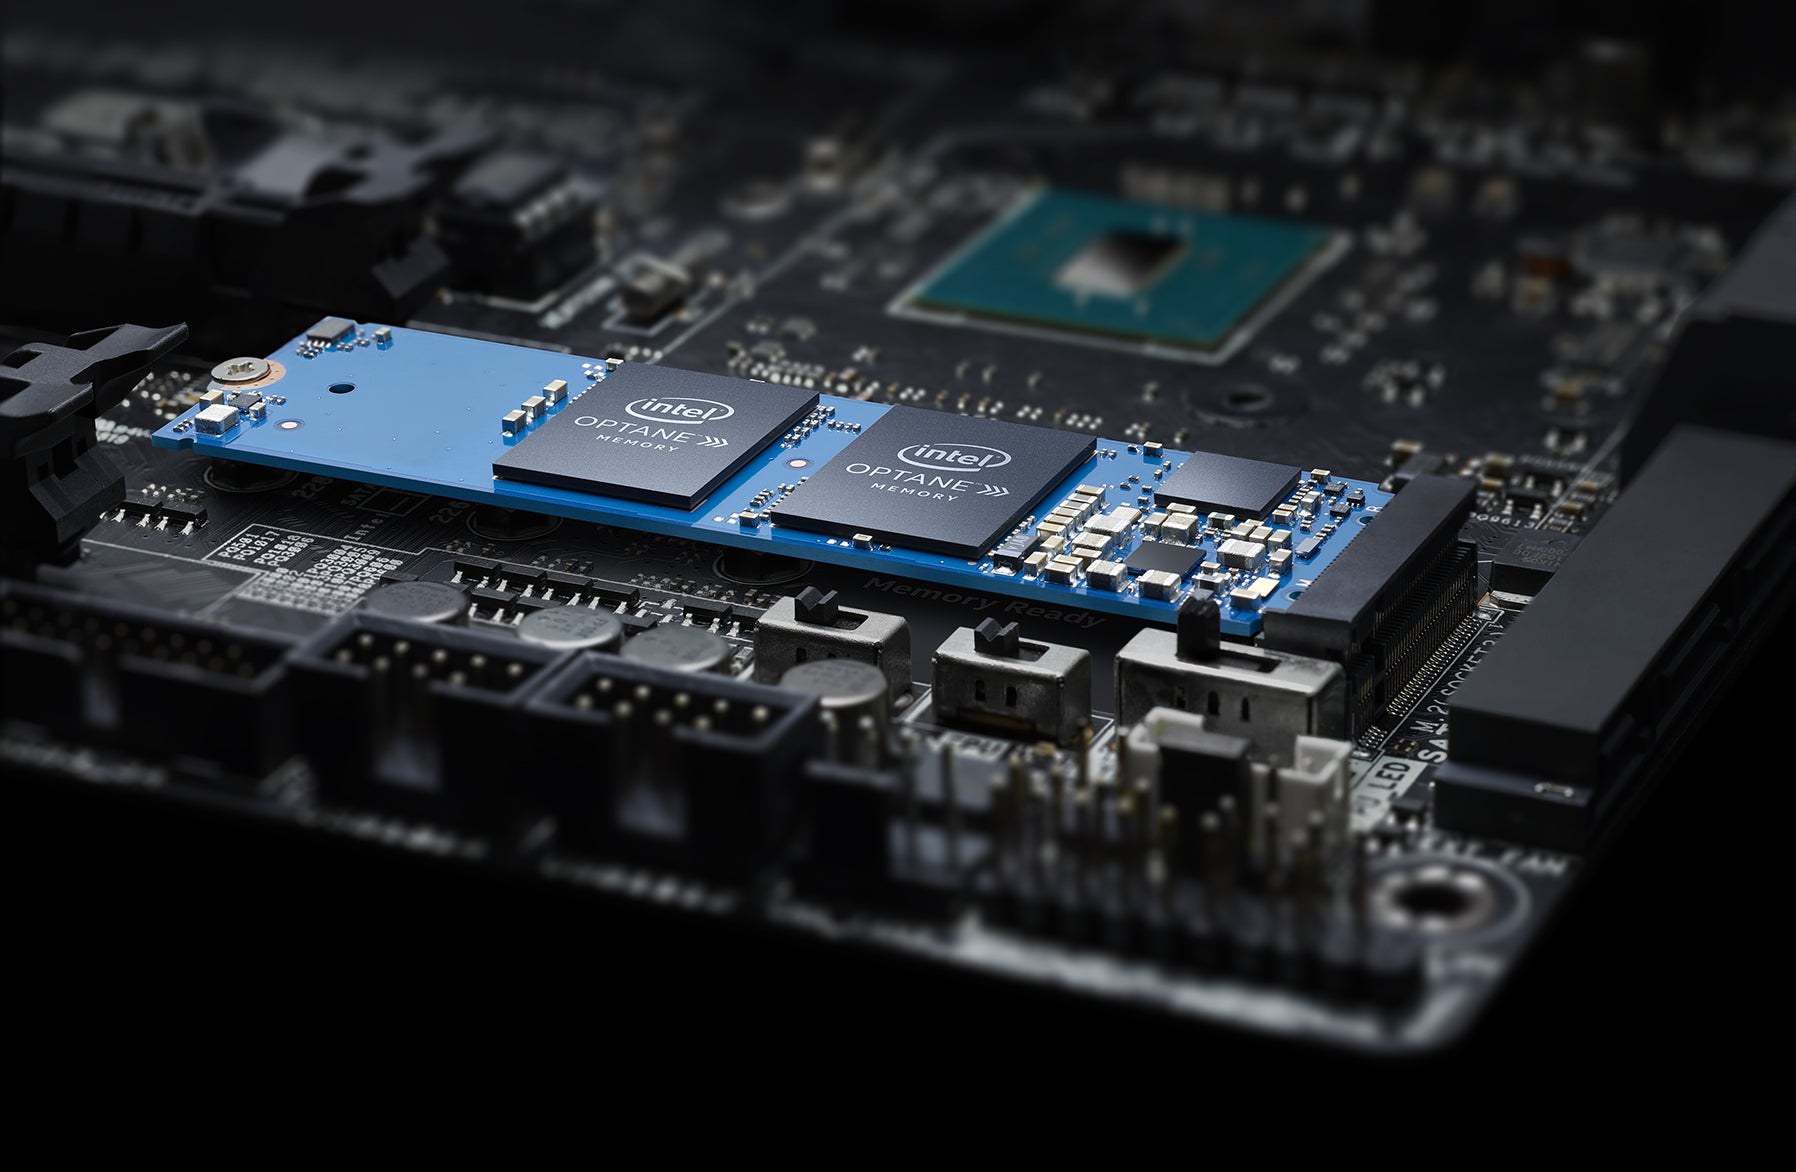 Procesor i5-12600K ponúka podporu Intel Optane Memory pre najnovšie cachovacie pamäte, ktoré dokážu zrýchliť váš platňový disk o niekoľko desiatok %.